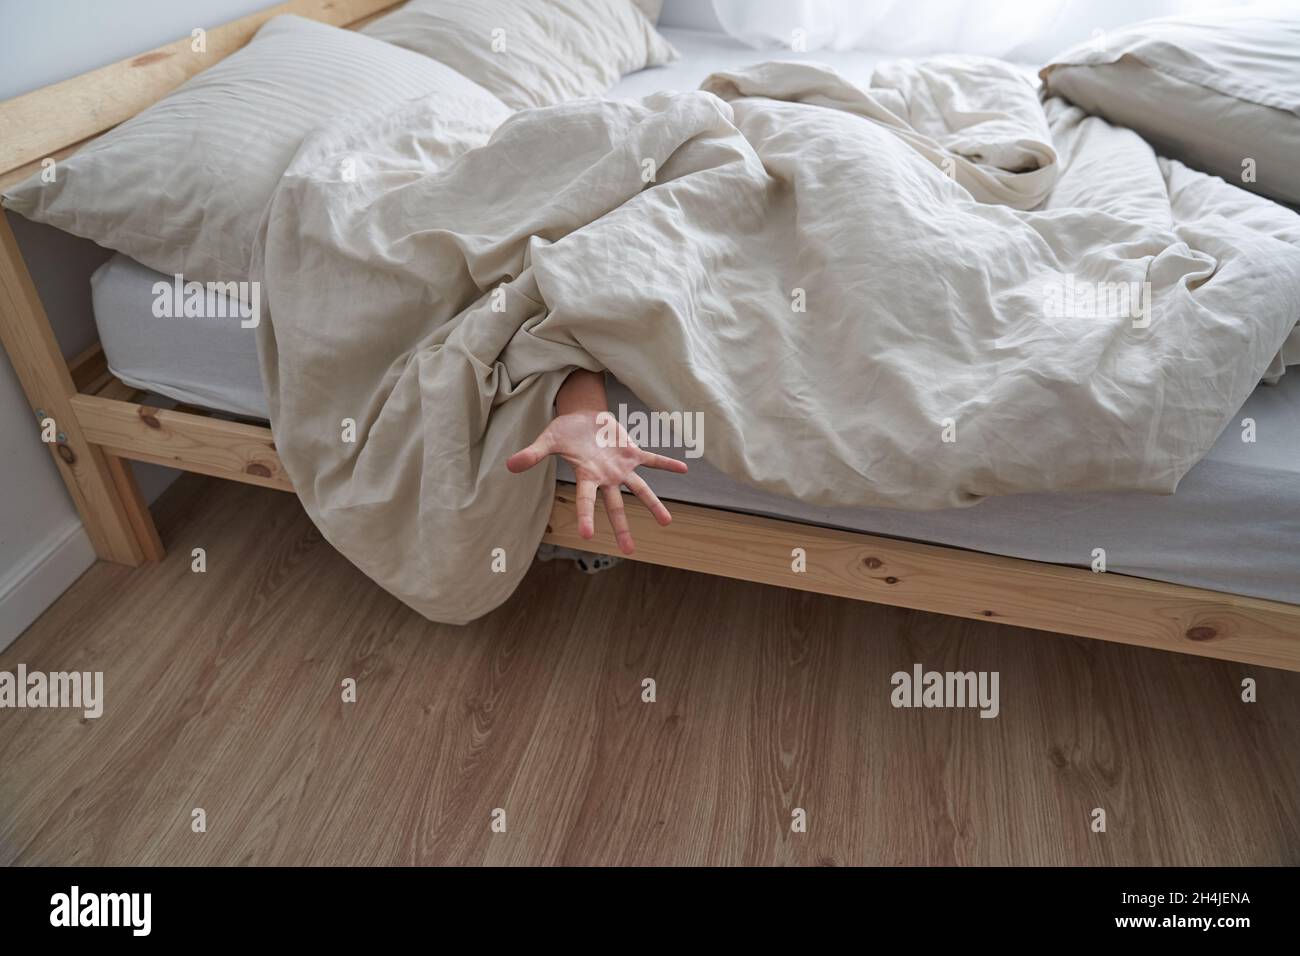 Primo piano della mano di un bambino, sdraiato a letto la mattina, la mano che sporge da sotto la coperta. Foto di alta qualità Foto Stock